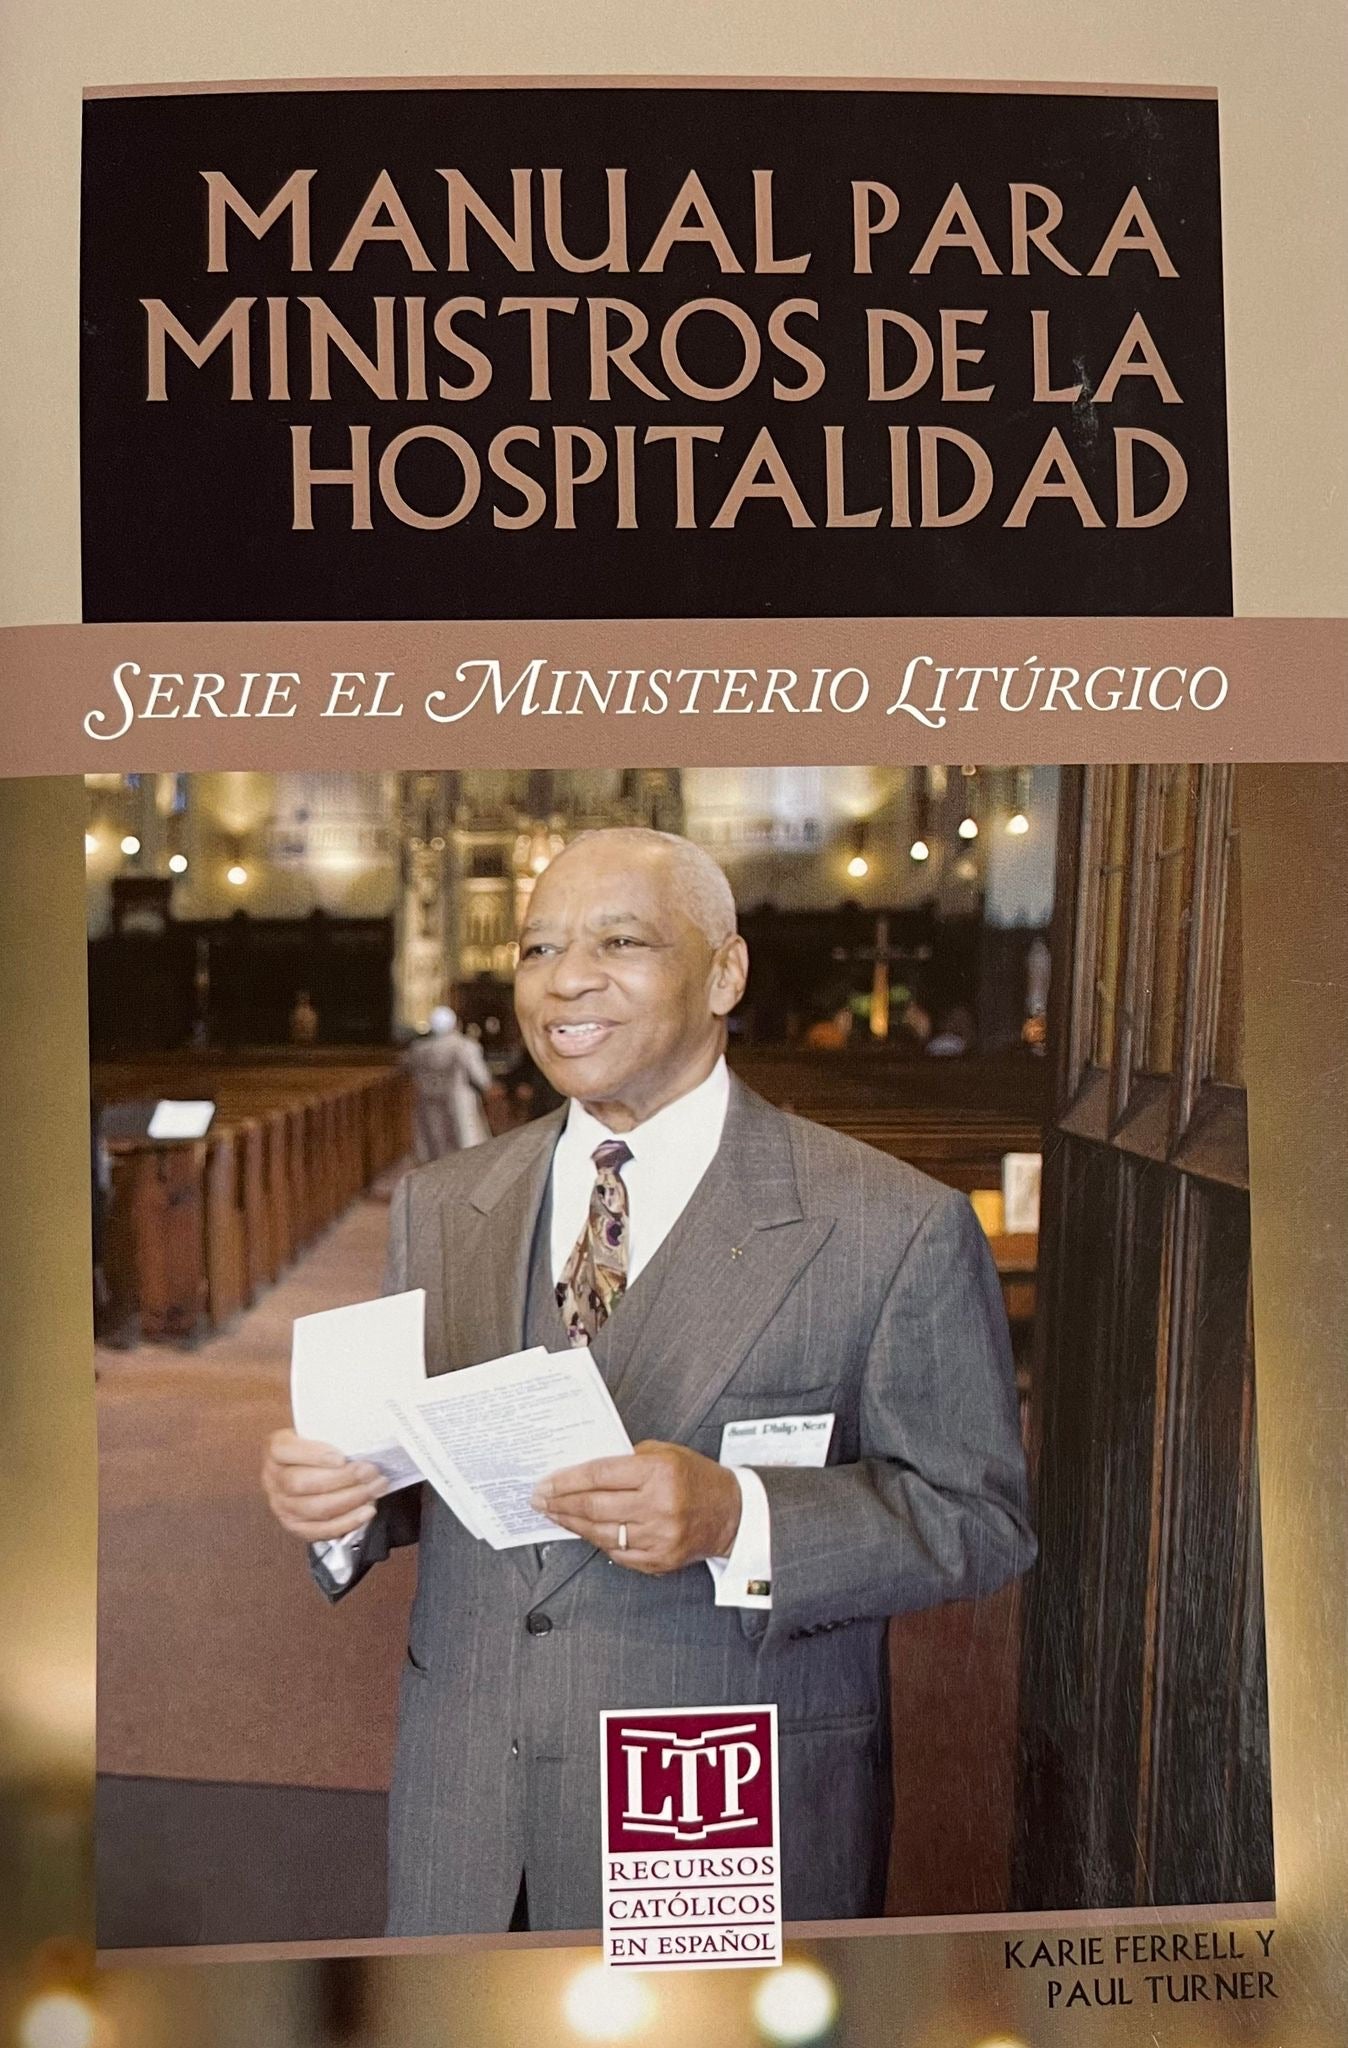 Manual para ministros de la hospitalidad